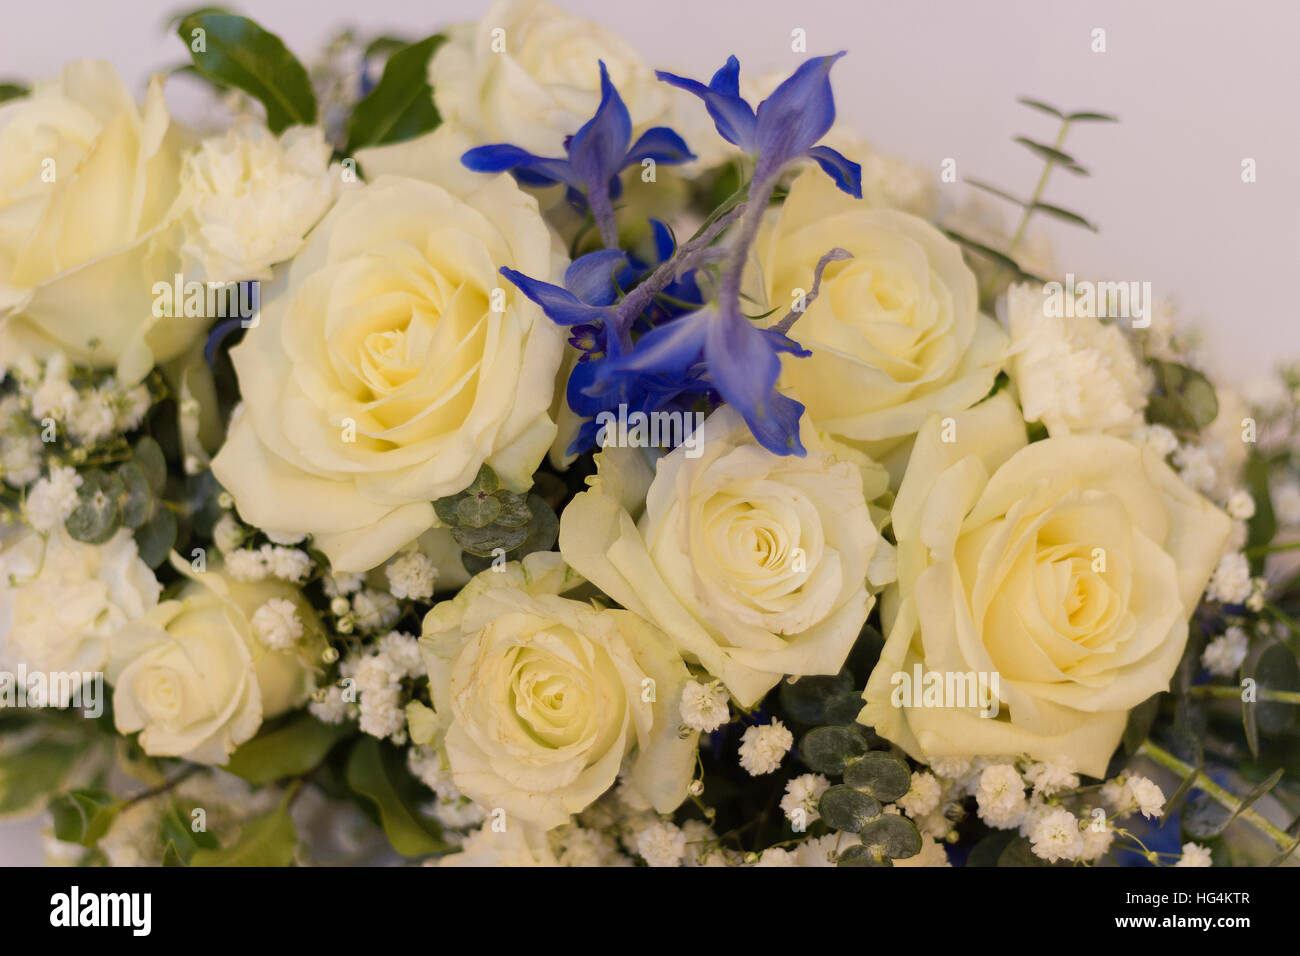 Boda arreglo floral para mesa con rosas y flores de color azul Foto de stock